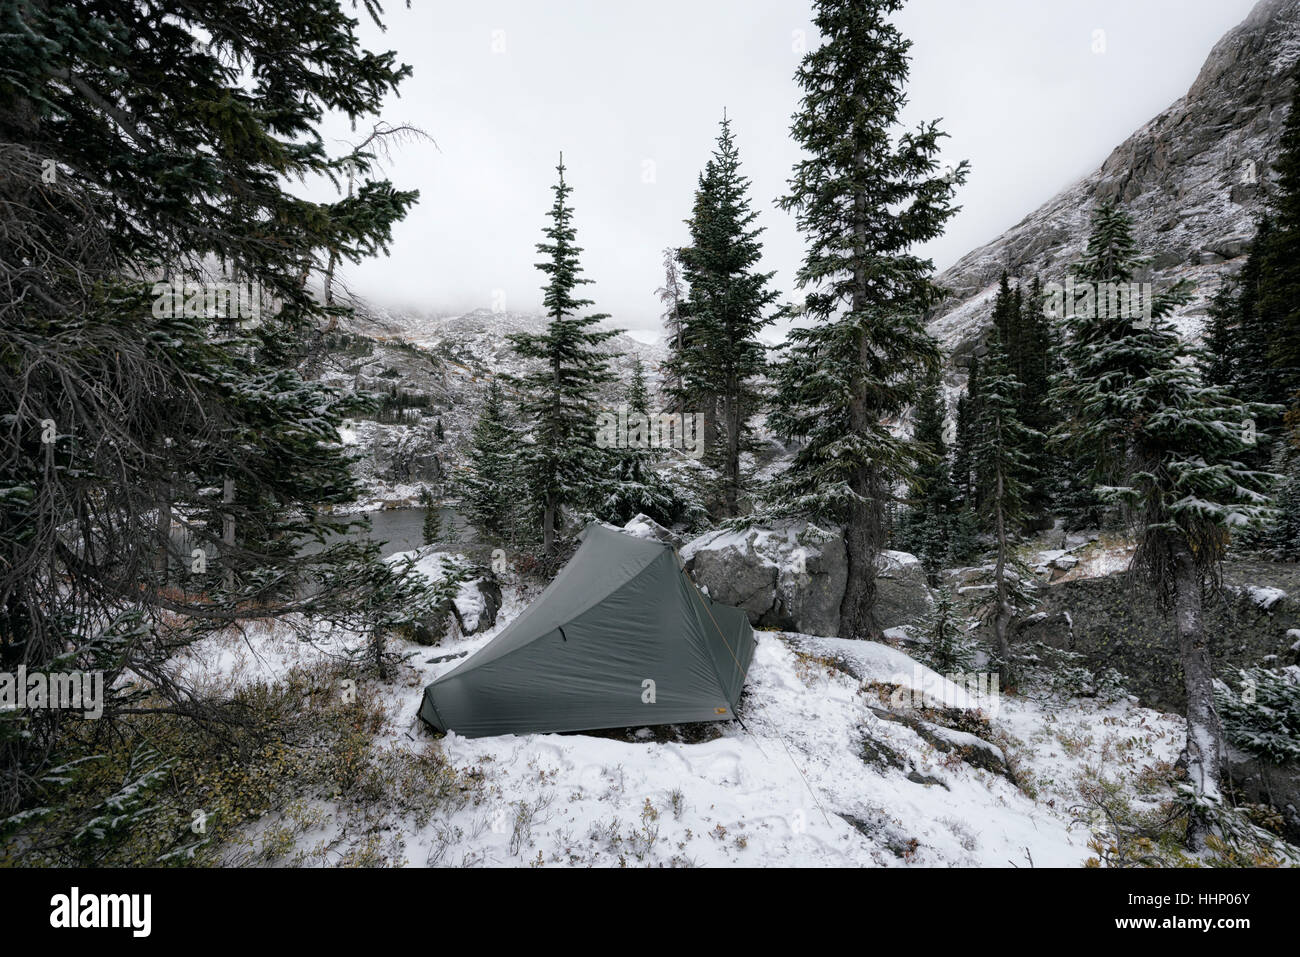 Tente de camping dans paysage de neige Banque D'Images